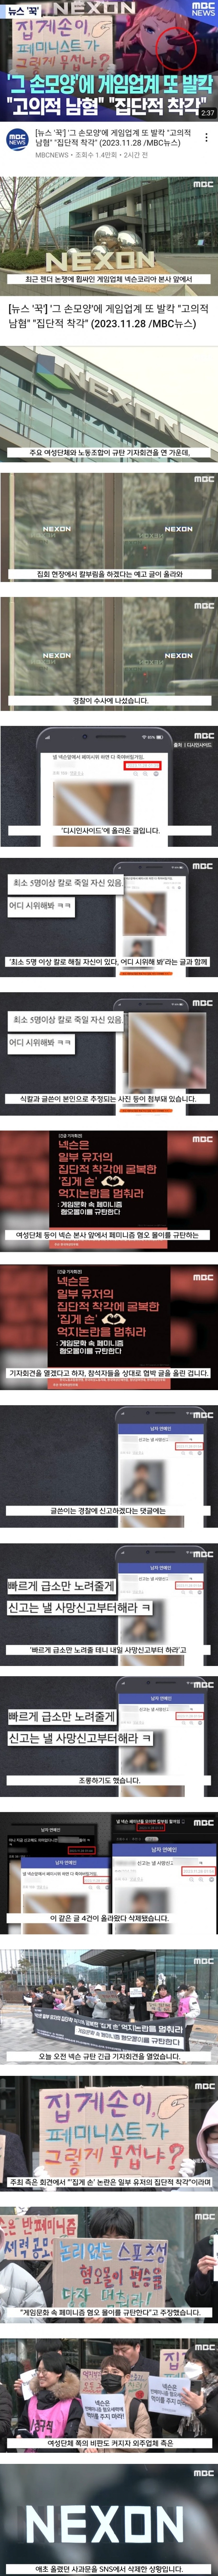 남혐 게임 사건에 대한 MBC의 보도 - 4